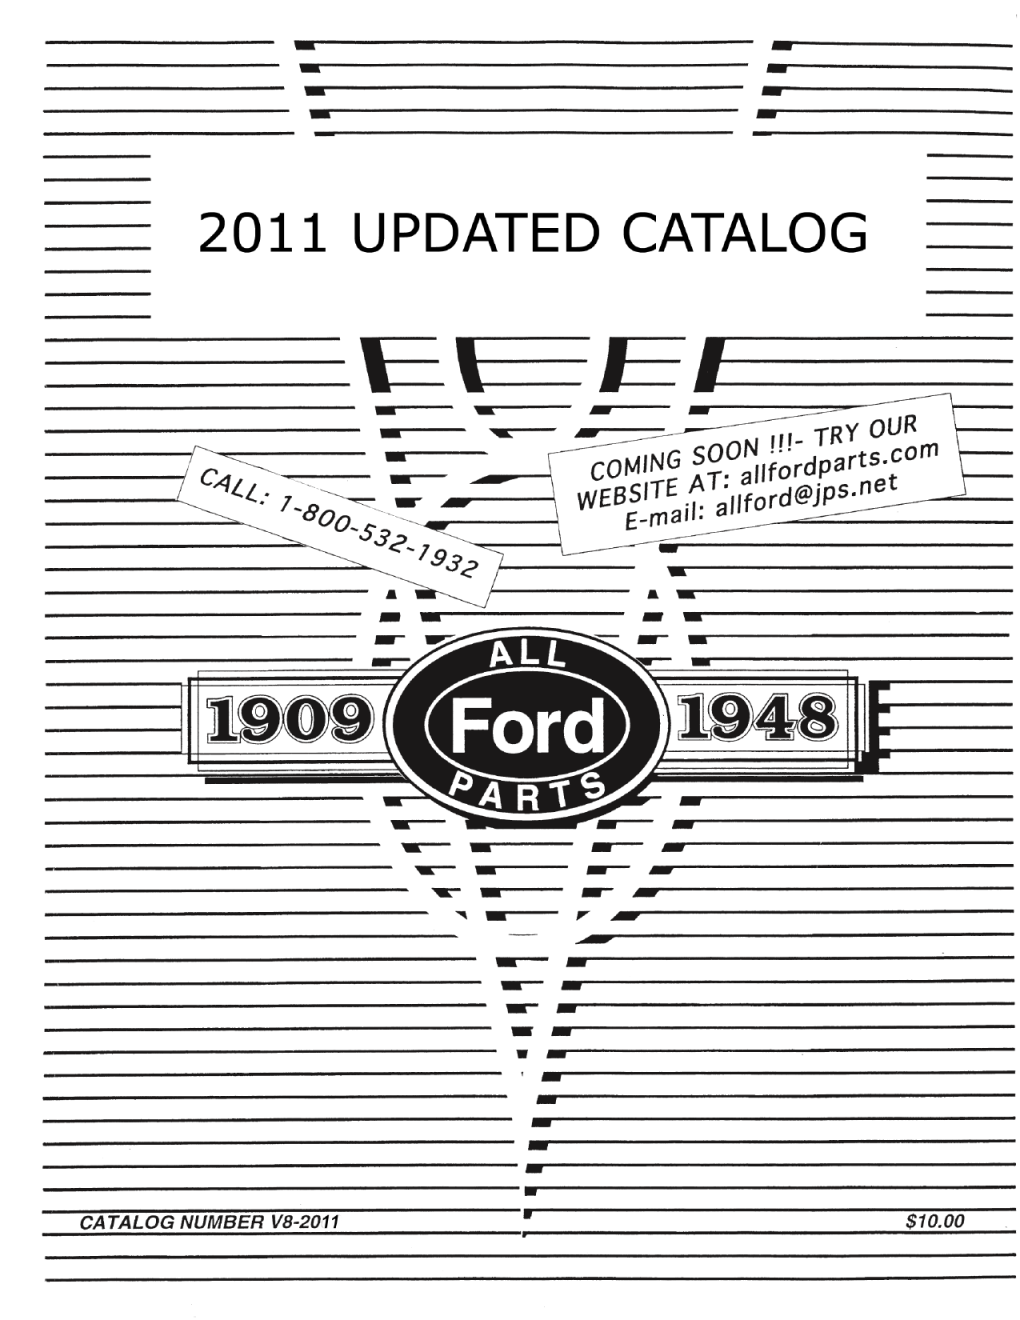 All Ford Parts V8 Catalog 1932-48 8-21-11